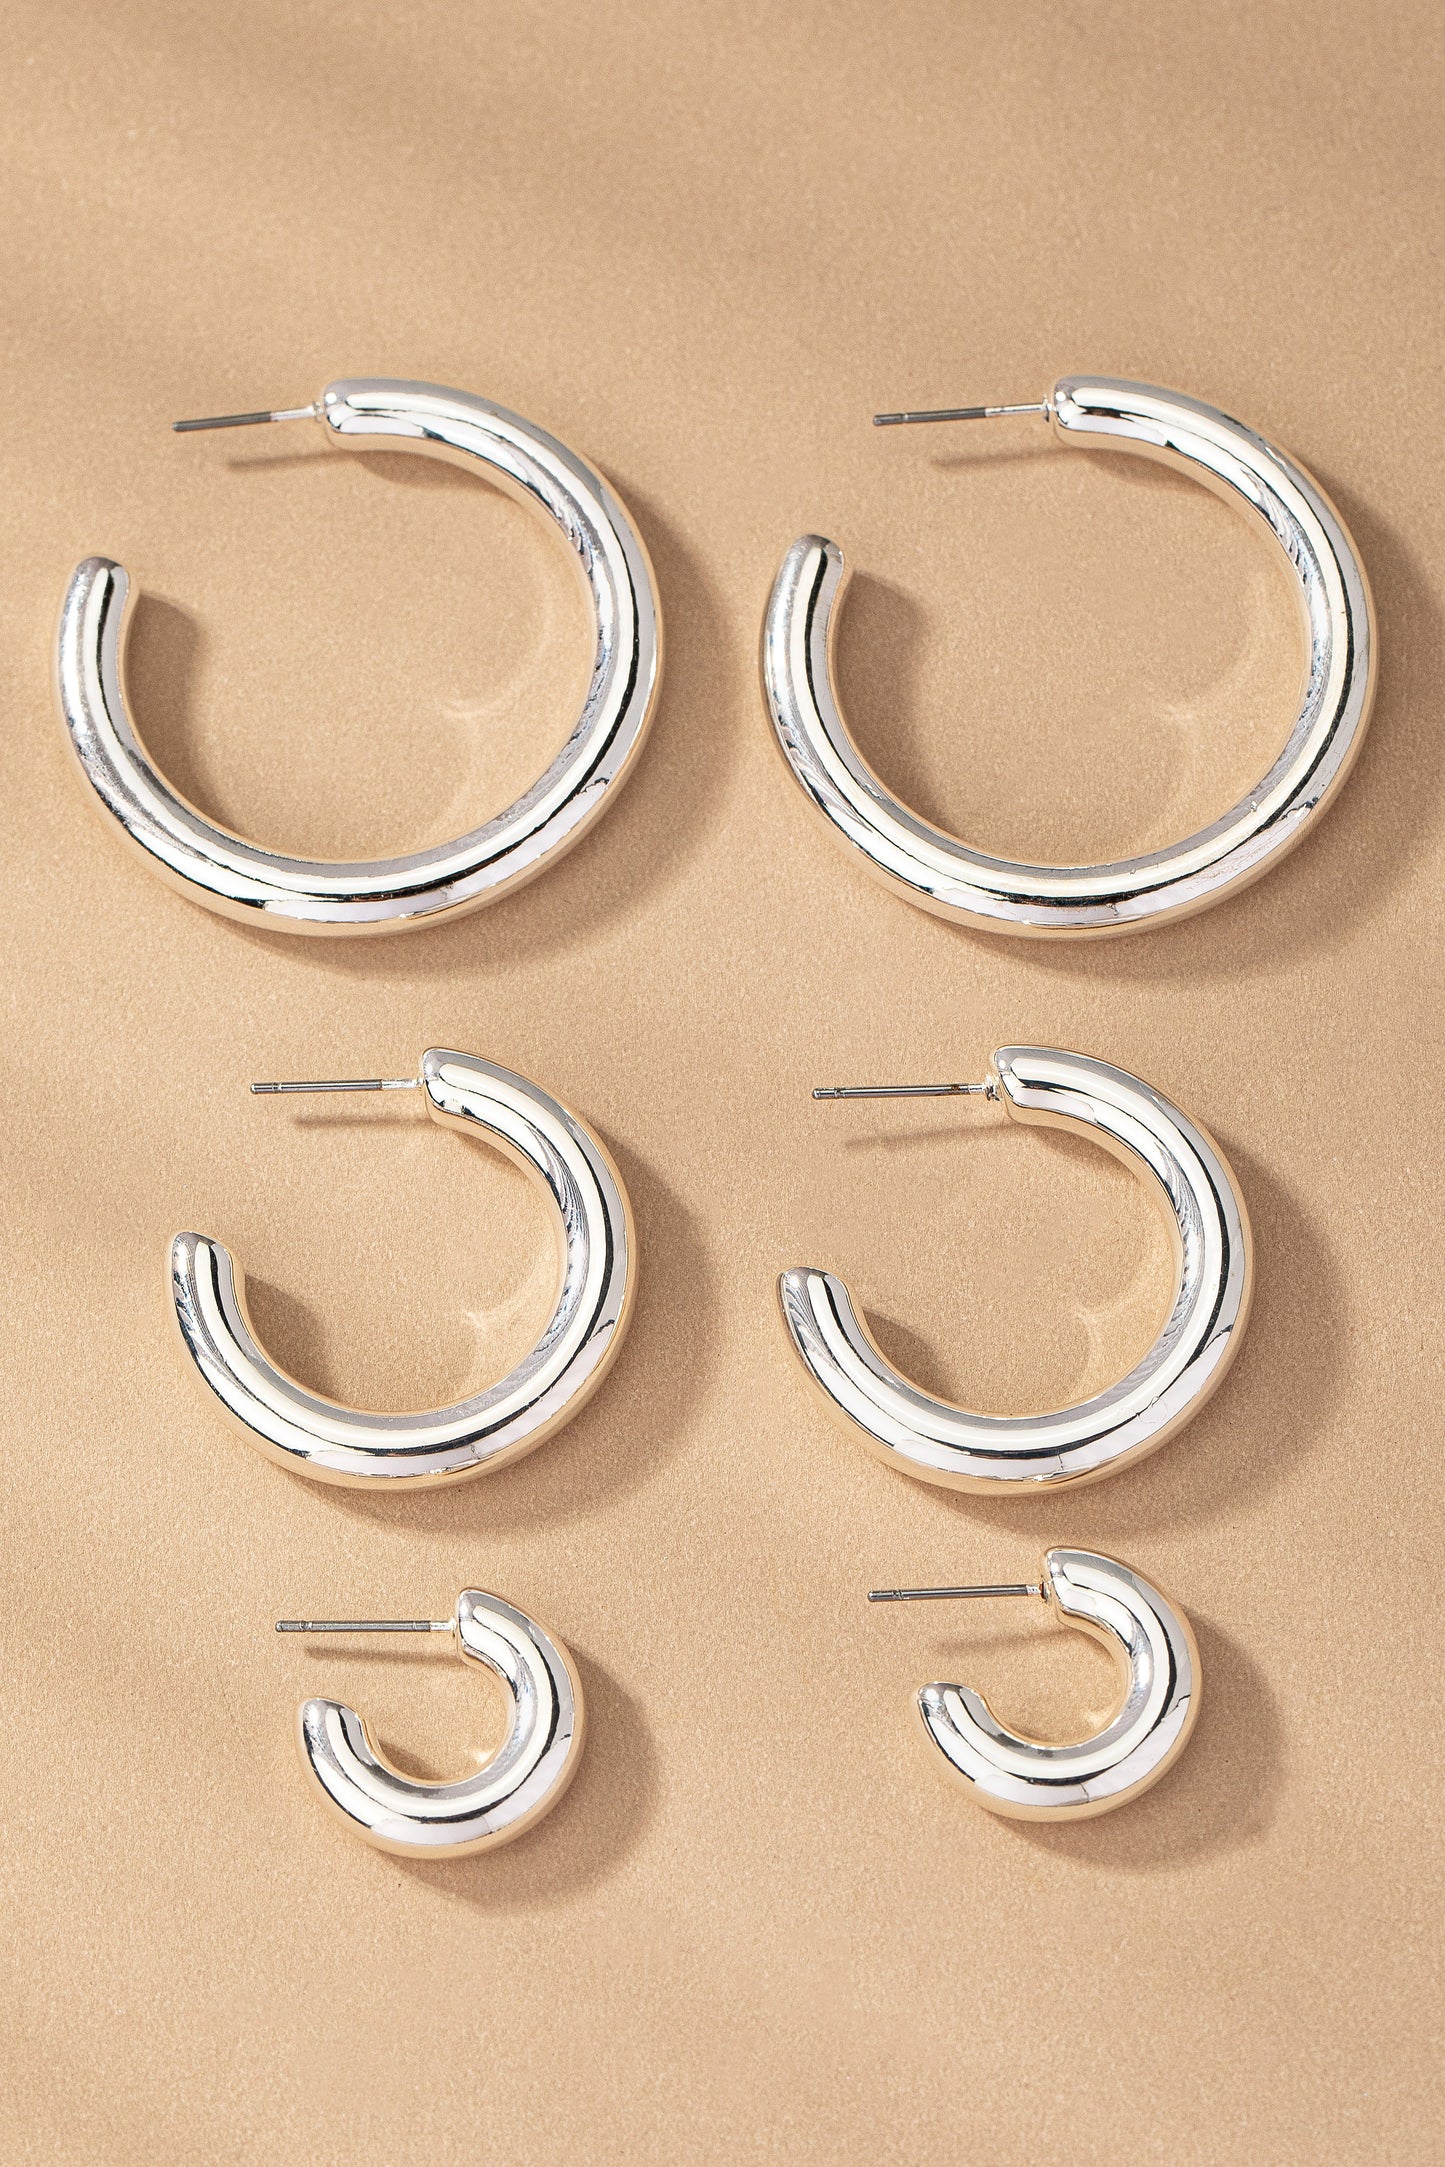 Triple Threat Hoop Earrings Set